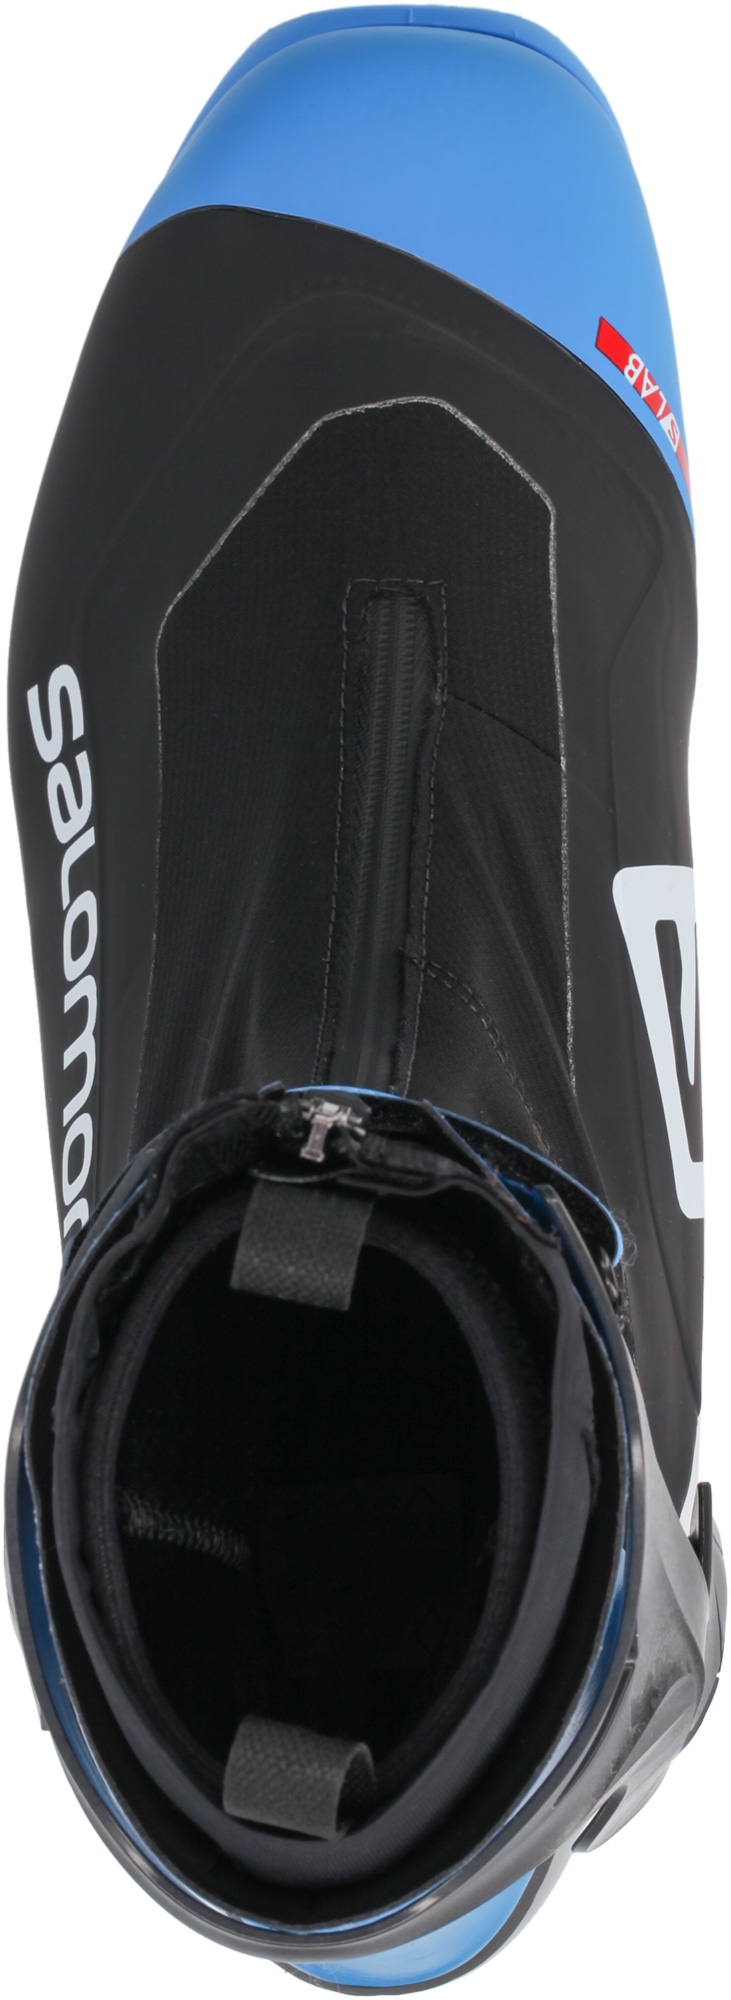 Ботинки для беговых лыж Salomon S/Lab Carbon Skate Prolink 2021, black/blue, 43